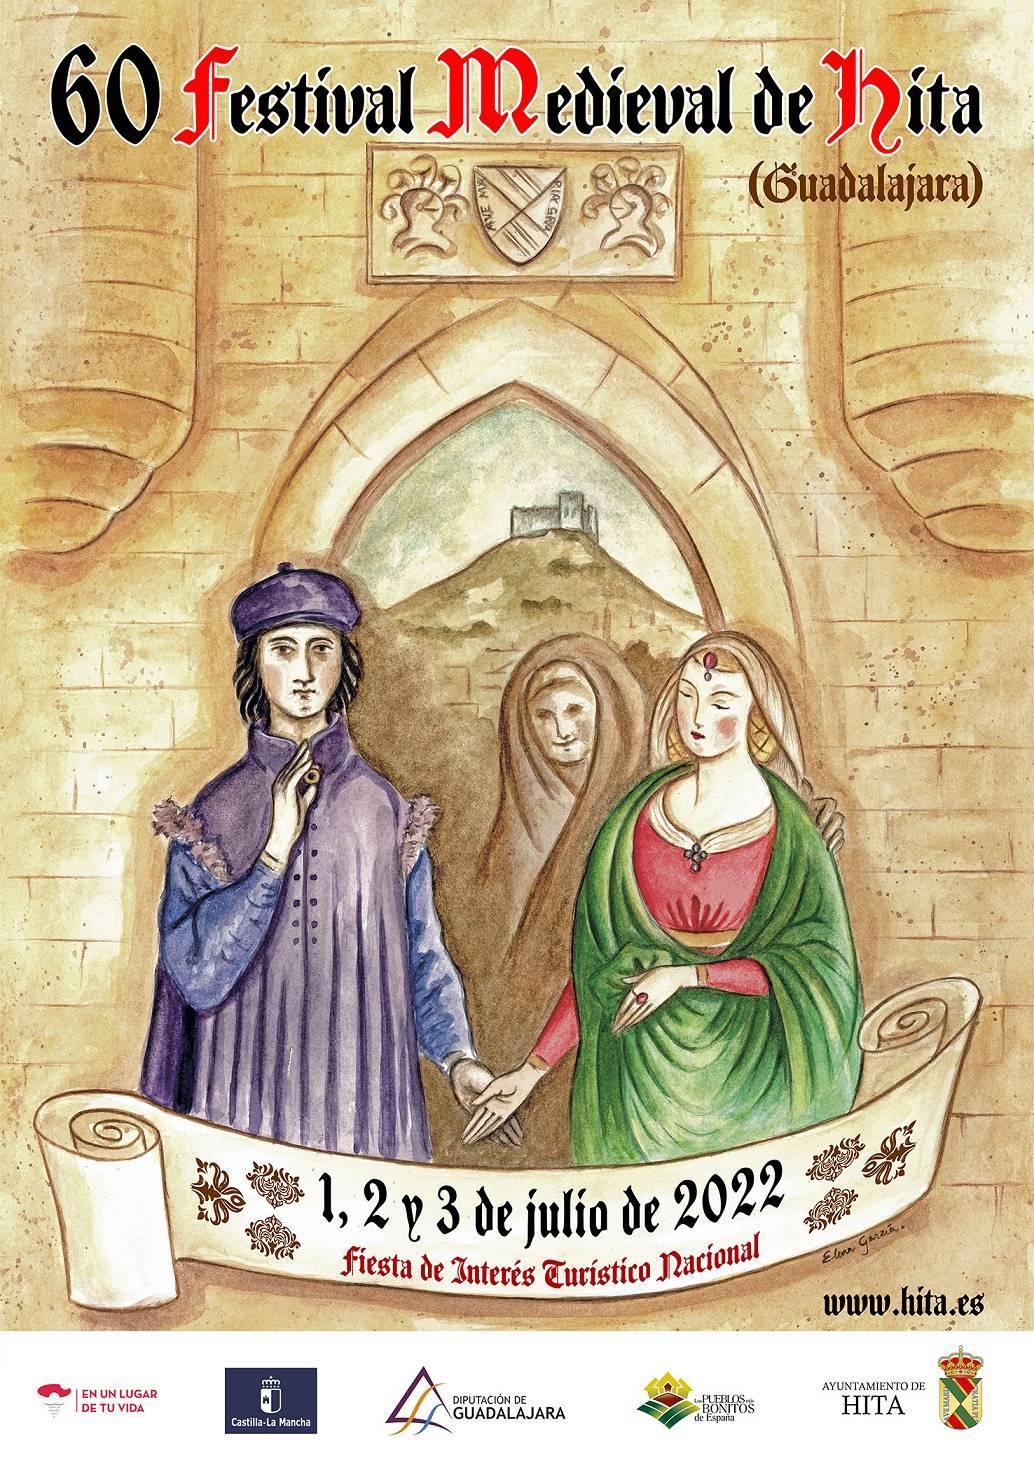 Festival medieval (2022) - Hita (Guadalajara)